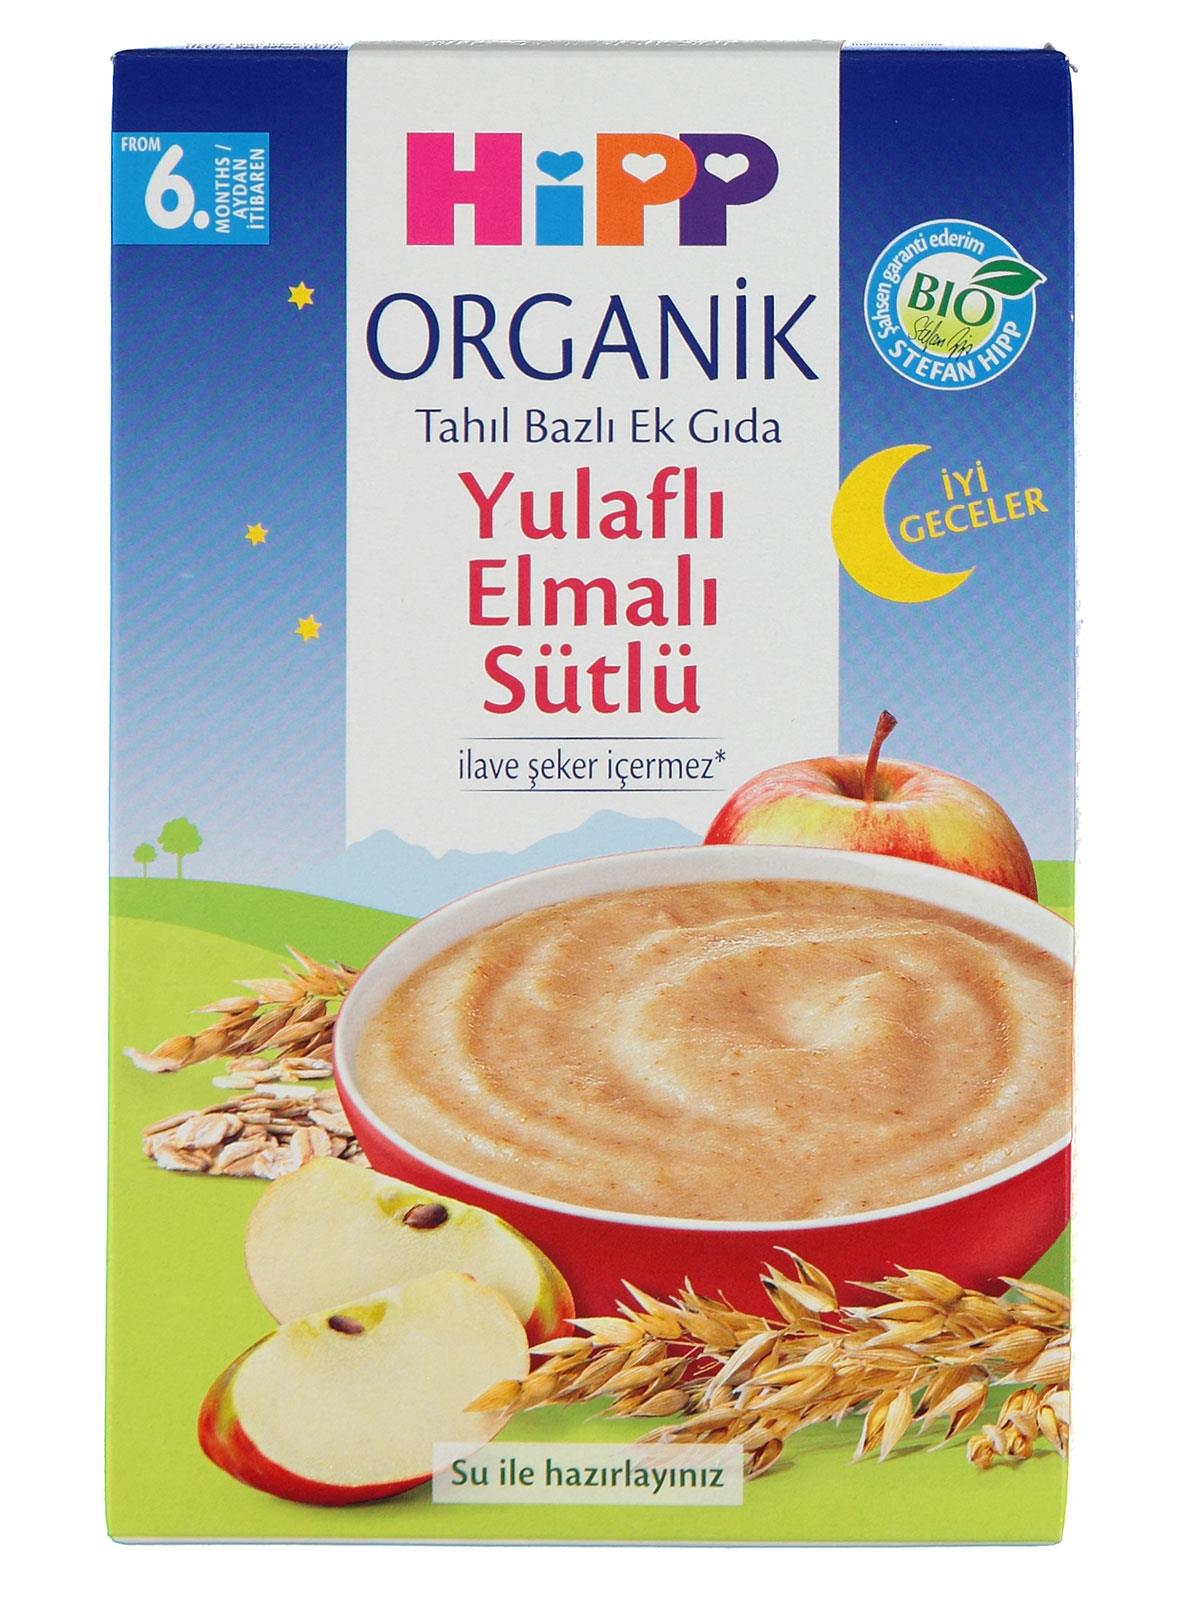 Hipp Organik İyi Geceler Organik Yulaflı Elma Sütlü Ek Gıda 6+ 250 gr